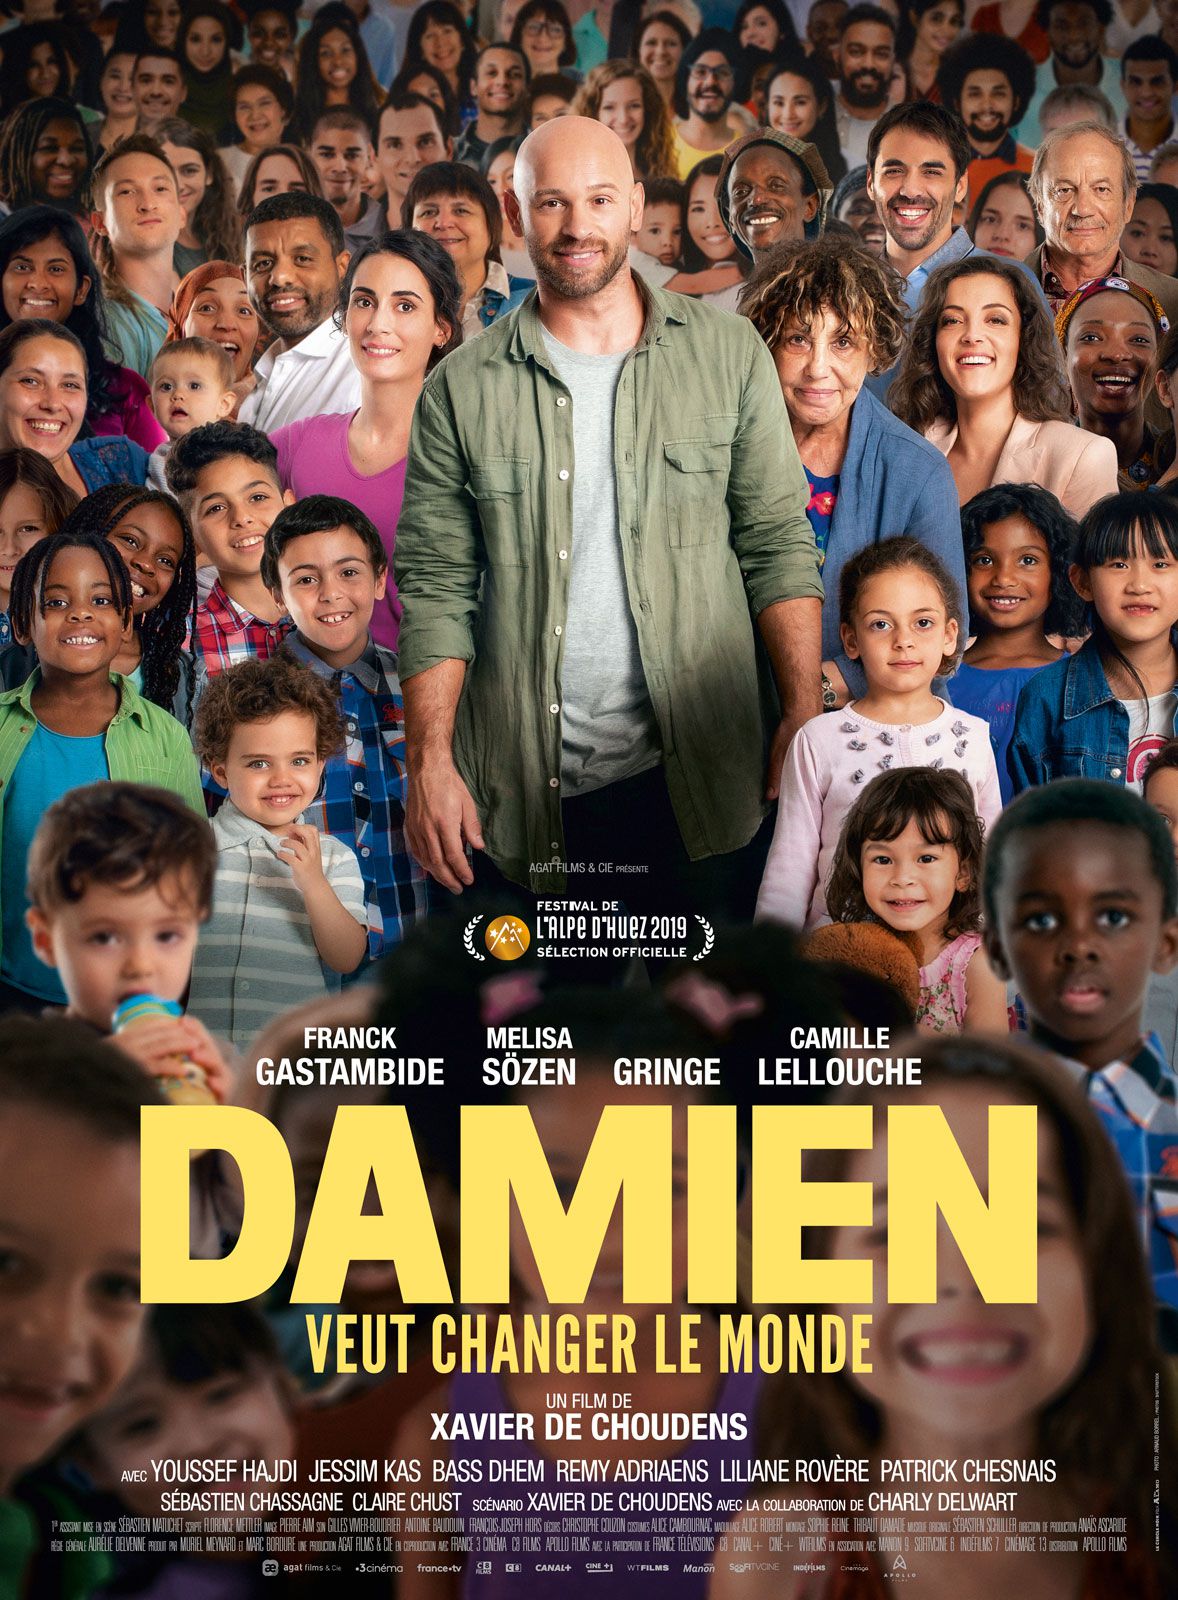 Damien veut changer le monde - Film (2019)